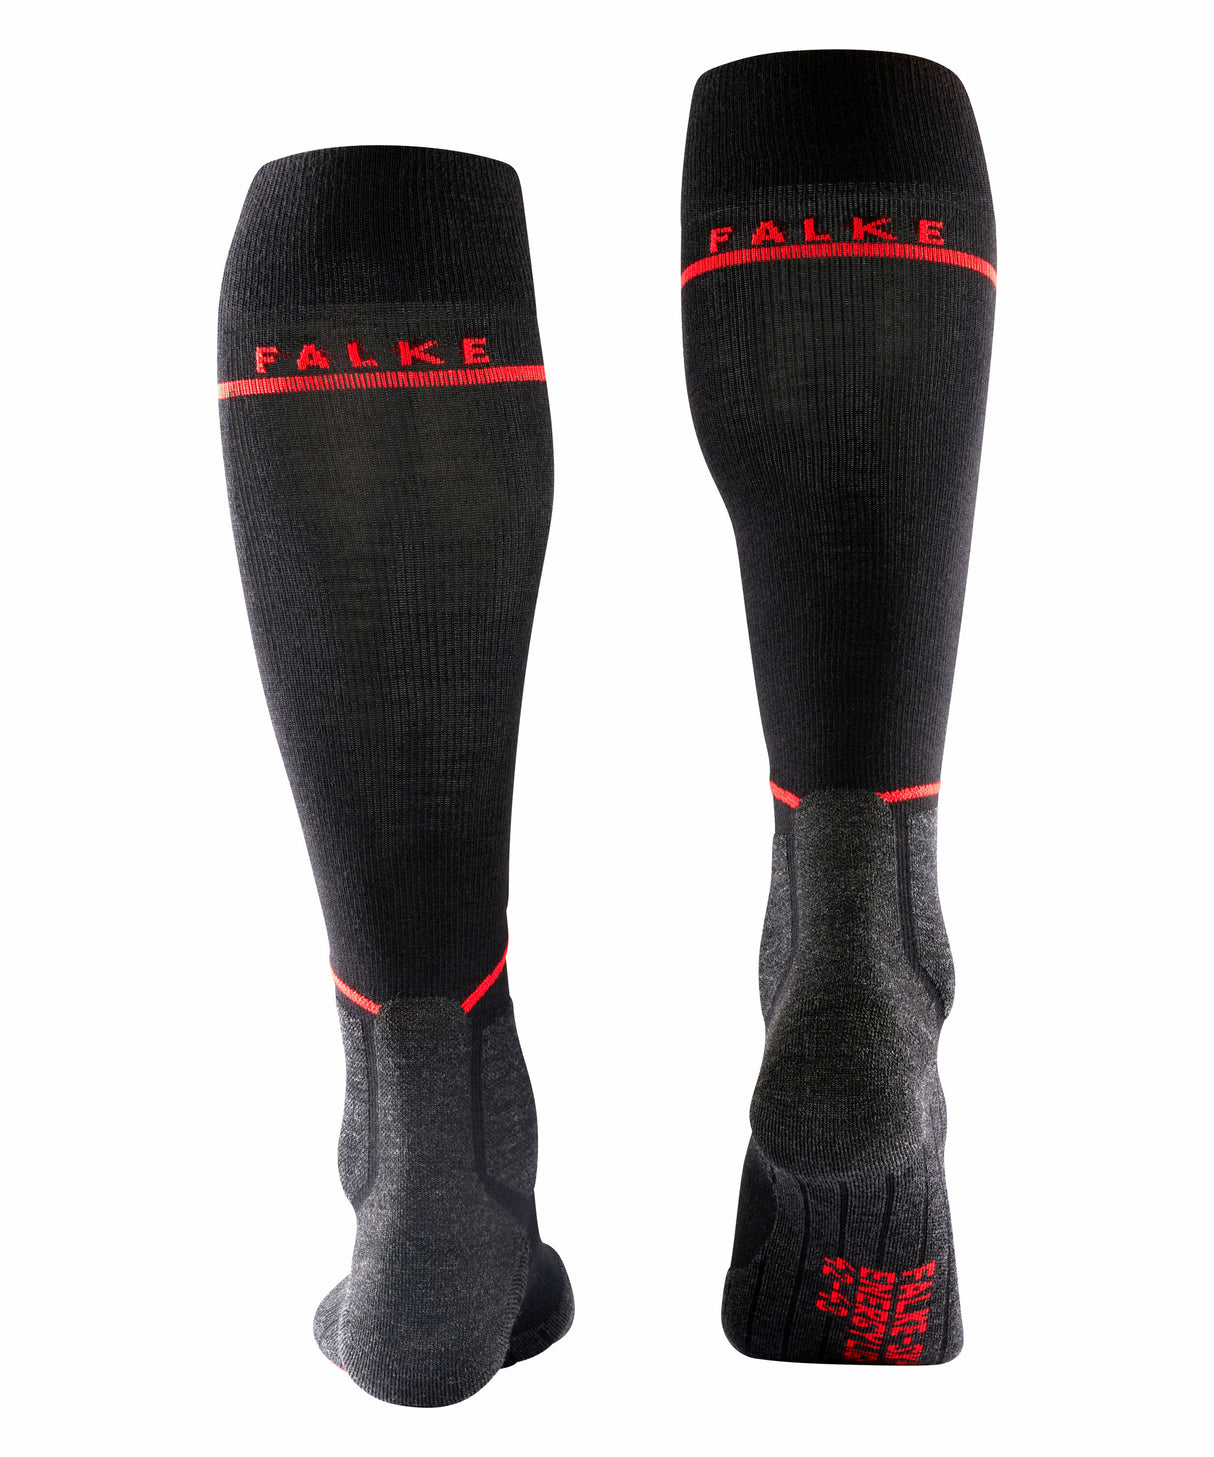 Falke SK4 Energising Men's Ski Socks